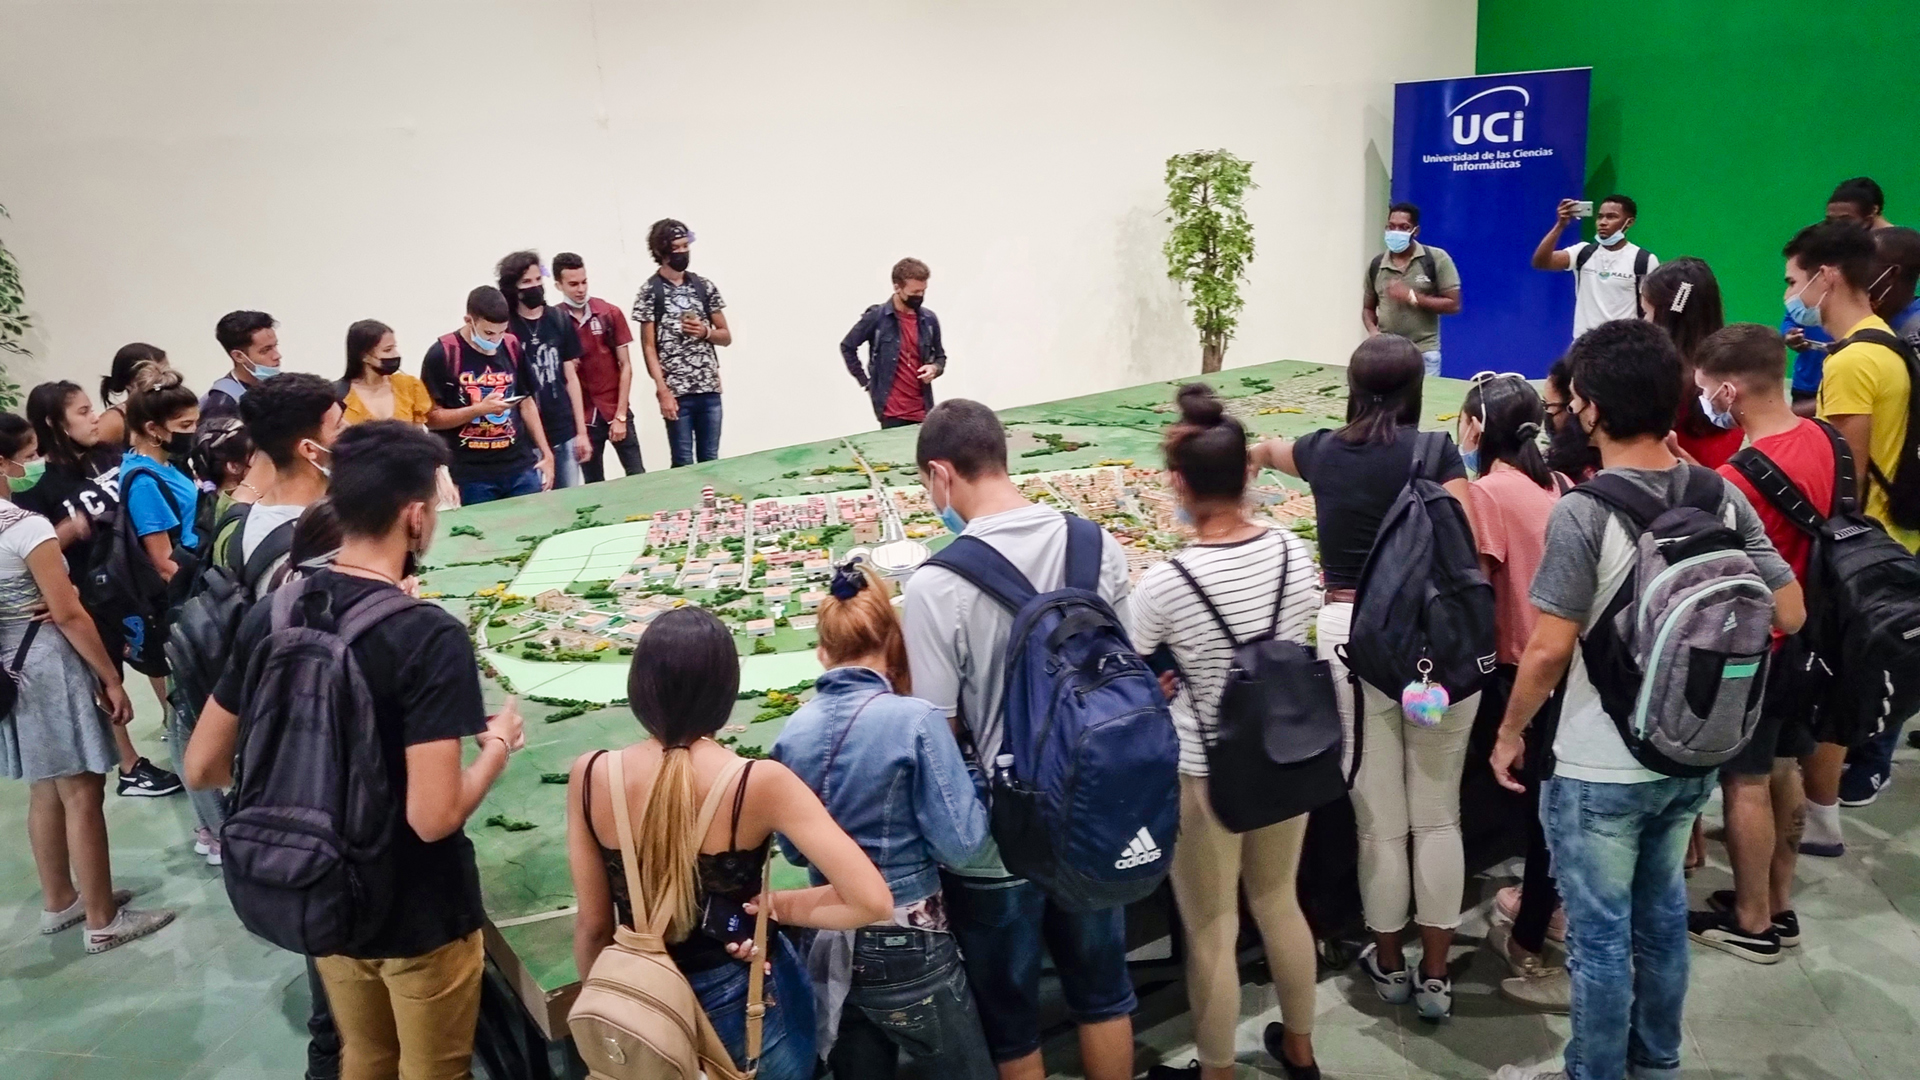 Un grupo de estudiantes visita la maqueta de la Universidad de las Ciencias Informáticas (UCI)